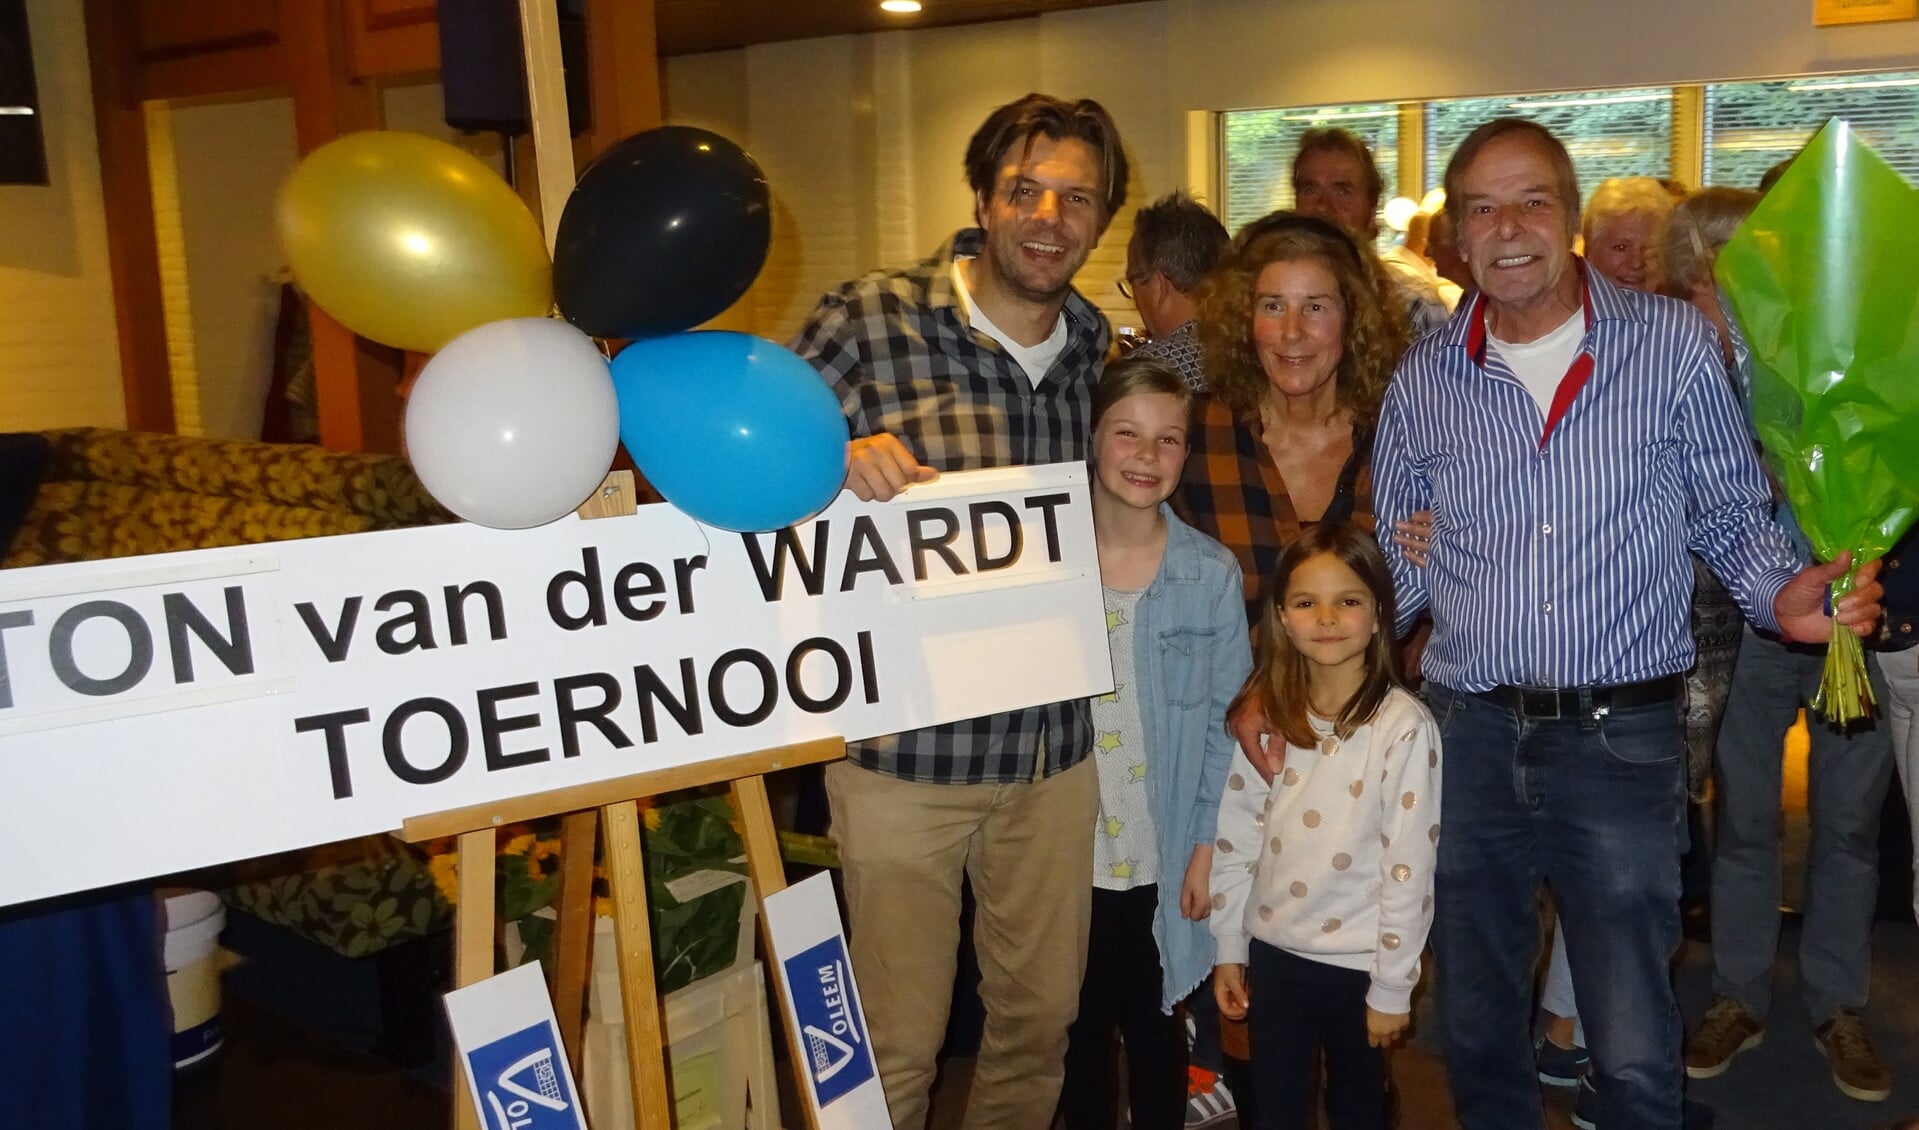 Ton van der Wardt en zijn familie na de onthulling van het bord 'Ton van der Wardt toernooi'.